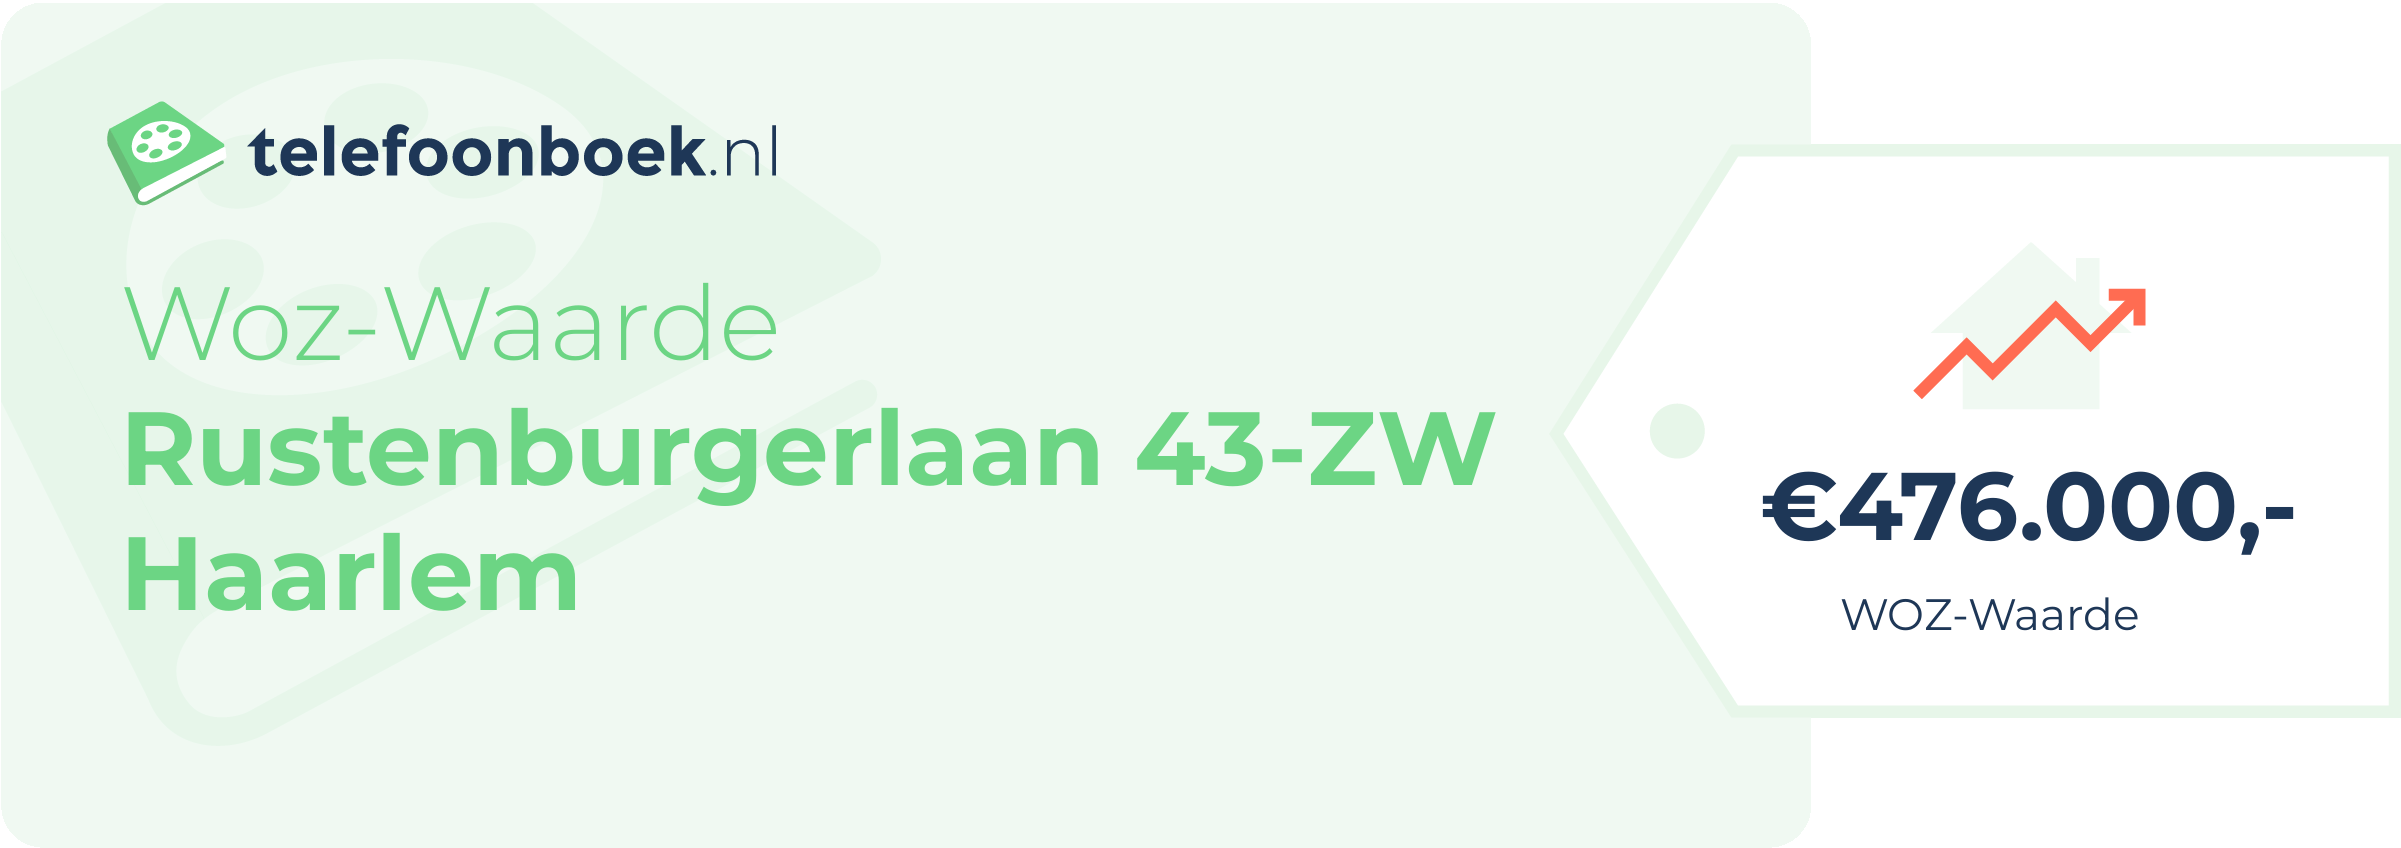 WOZ-waarde Rustenburgerlaan 43-ZW Haarlem